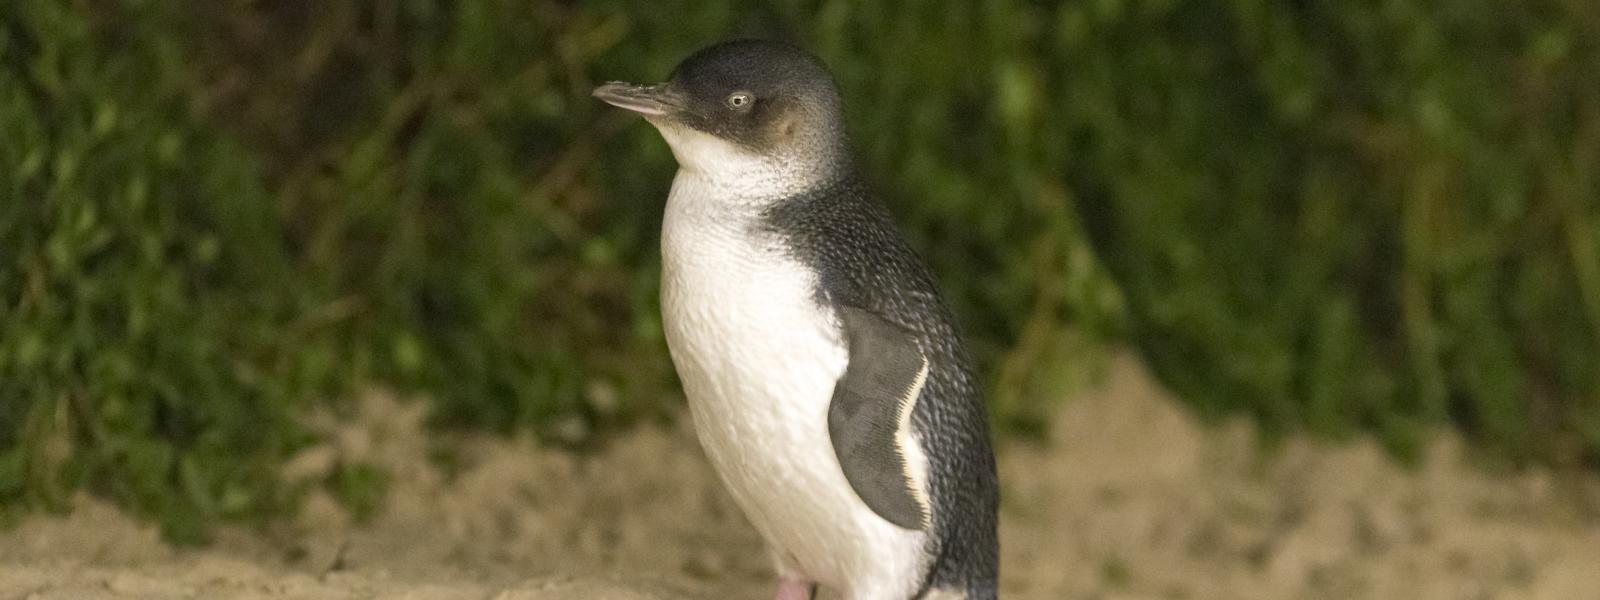 Eudyptula minor: little penguin. Image credit - Phillip Island Nature Park